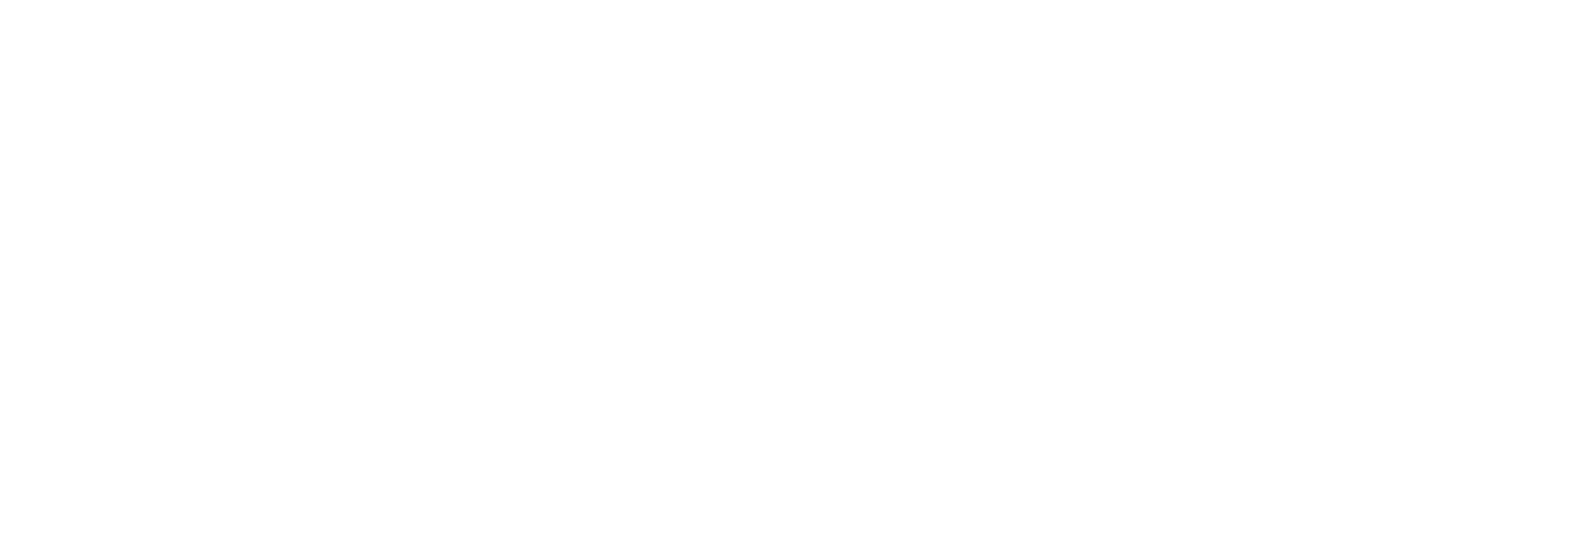 UiPath Logo groß für dunkle Hintergründe (transparentes PNG)